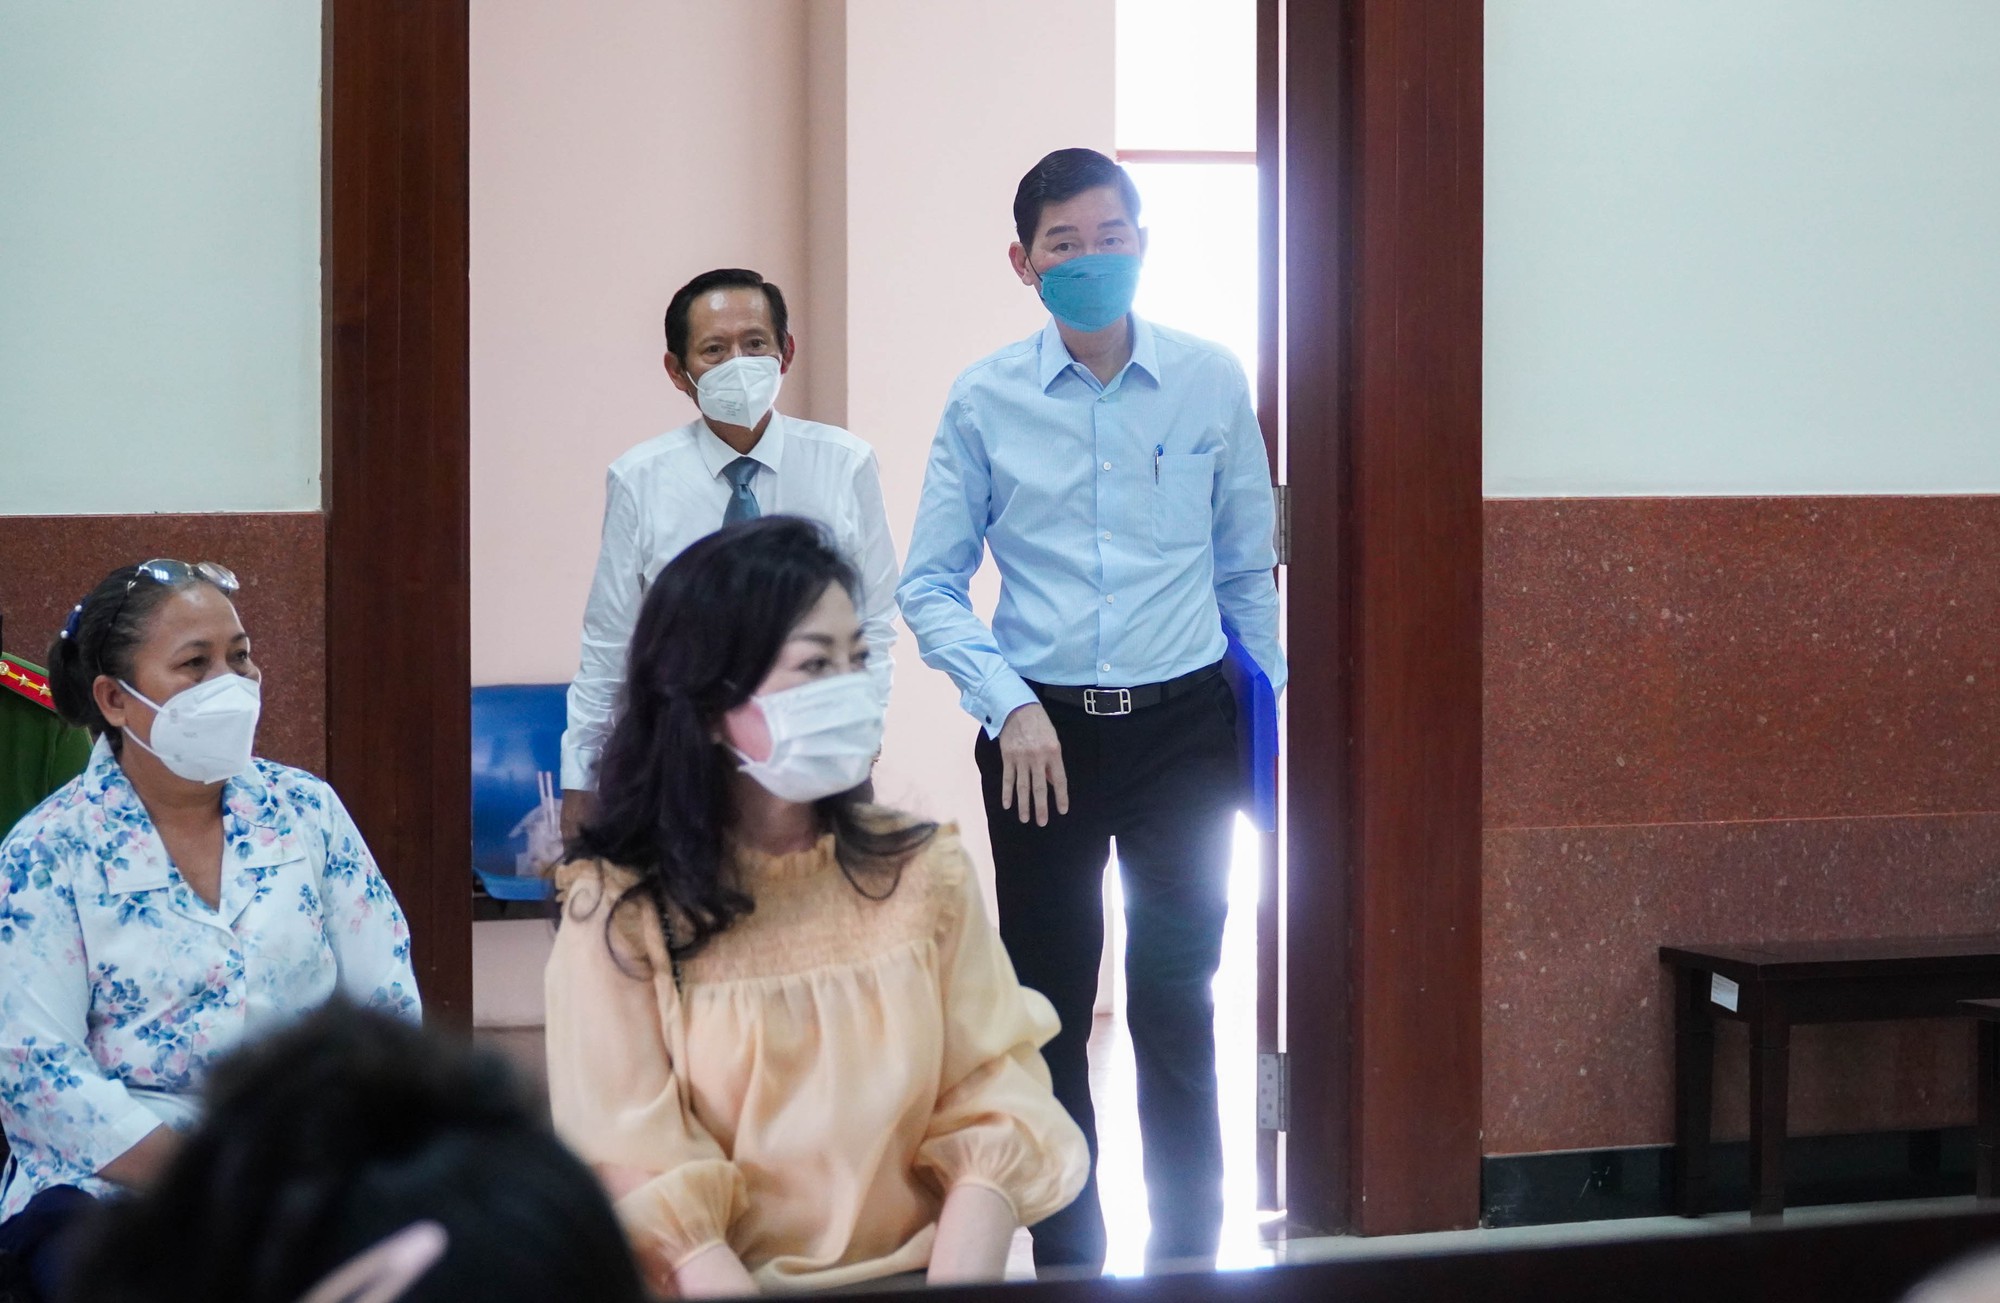 Chùm ảnh: Nguyên phó chủ tịch UBND TP HCM Trần Vĩnh Tuyến tiếp tục hầu tòa - Ảnh 2.